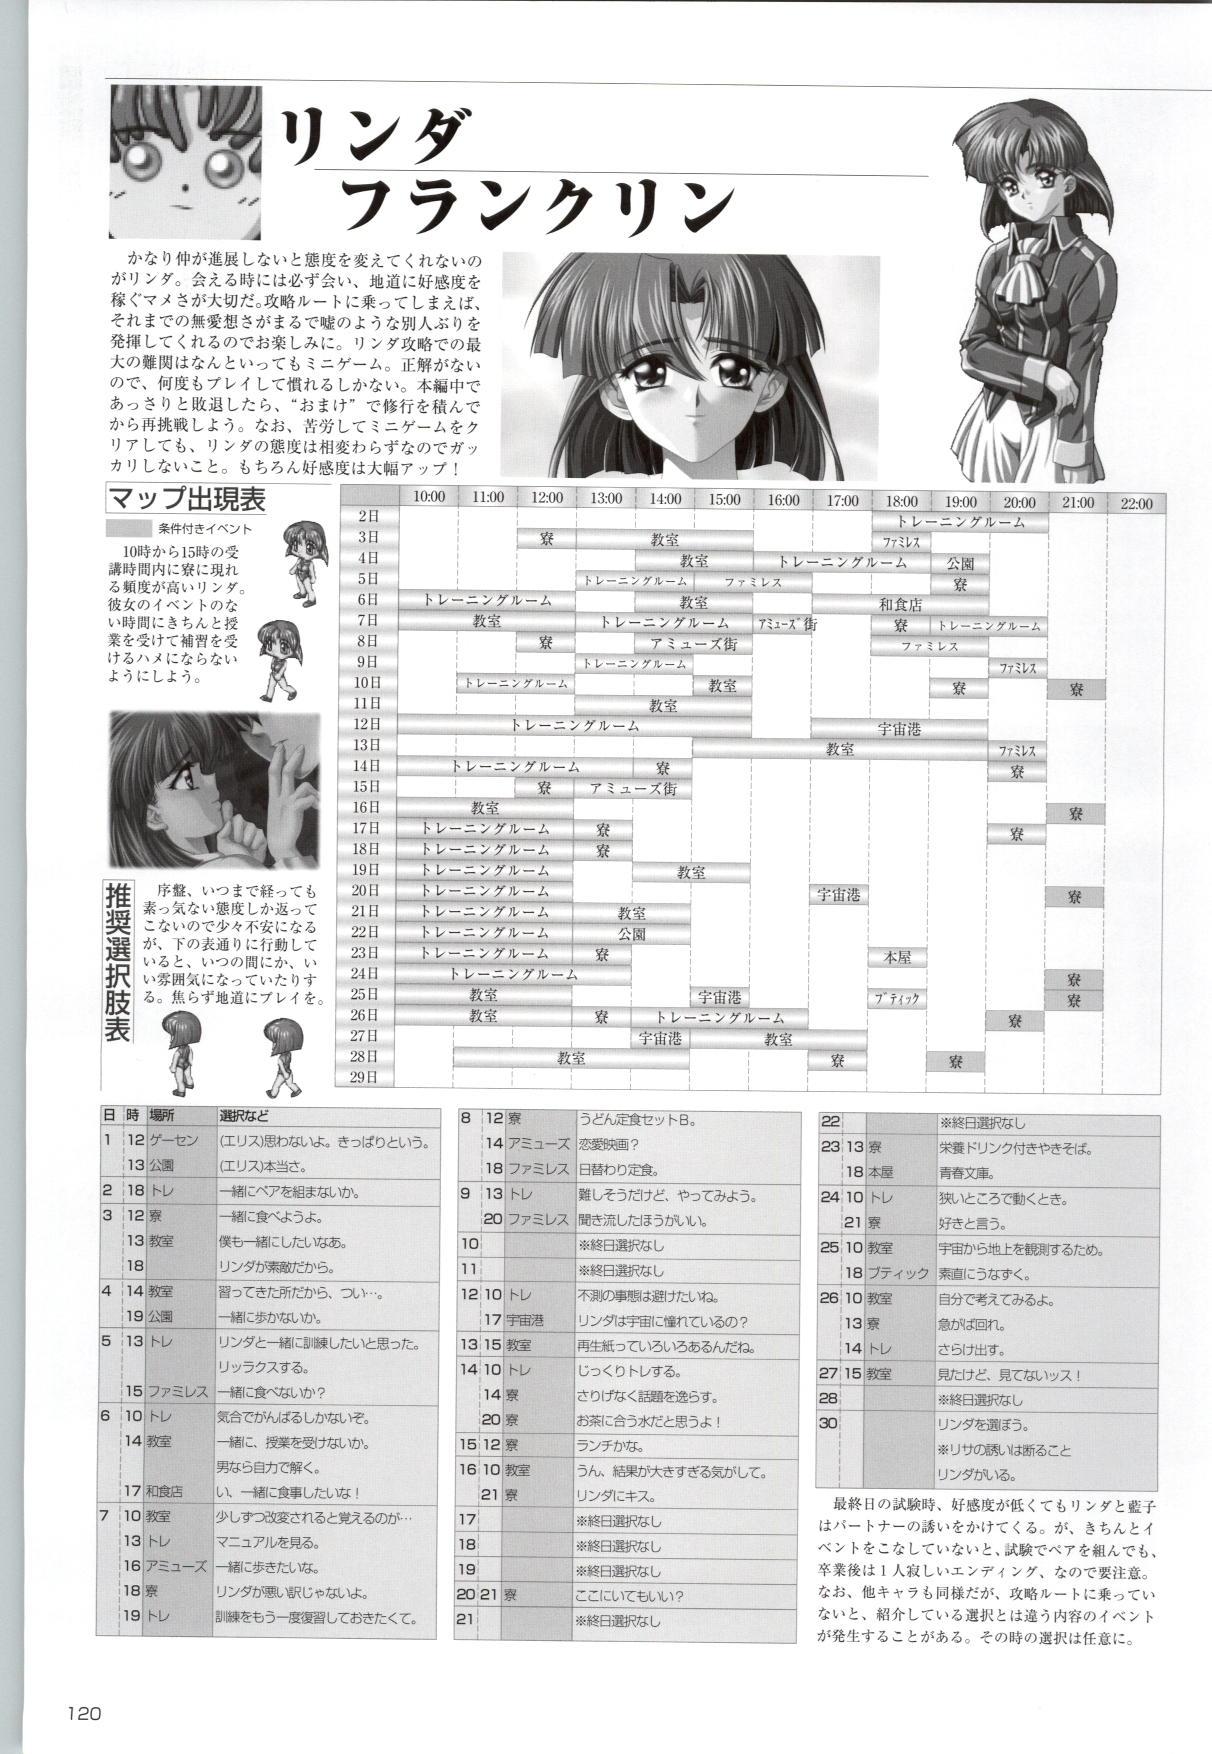 [Kinmedai Pink] ACTRESS Collection Kizuna + Seduce ~Yuuwaku~ + Hoshi no Pierce Computer Graphics & Original Pictures 120